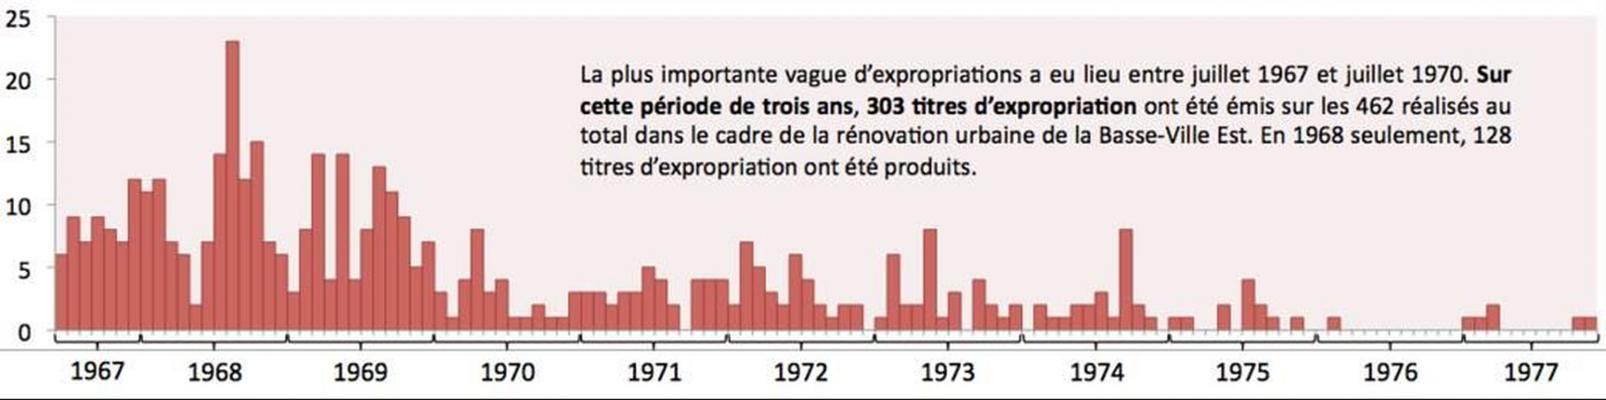 Histogramme en couleur représentant le nombre d’actes d’expropriation émis par mois et par année. Les expropriations sont plus nombreuses de 1967 à 1970 et diminuent progressivement jusqu’en 1977.